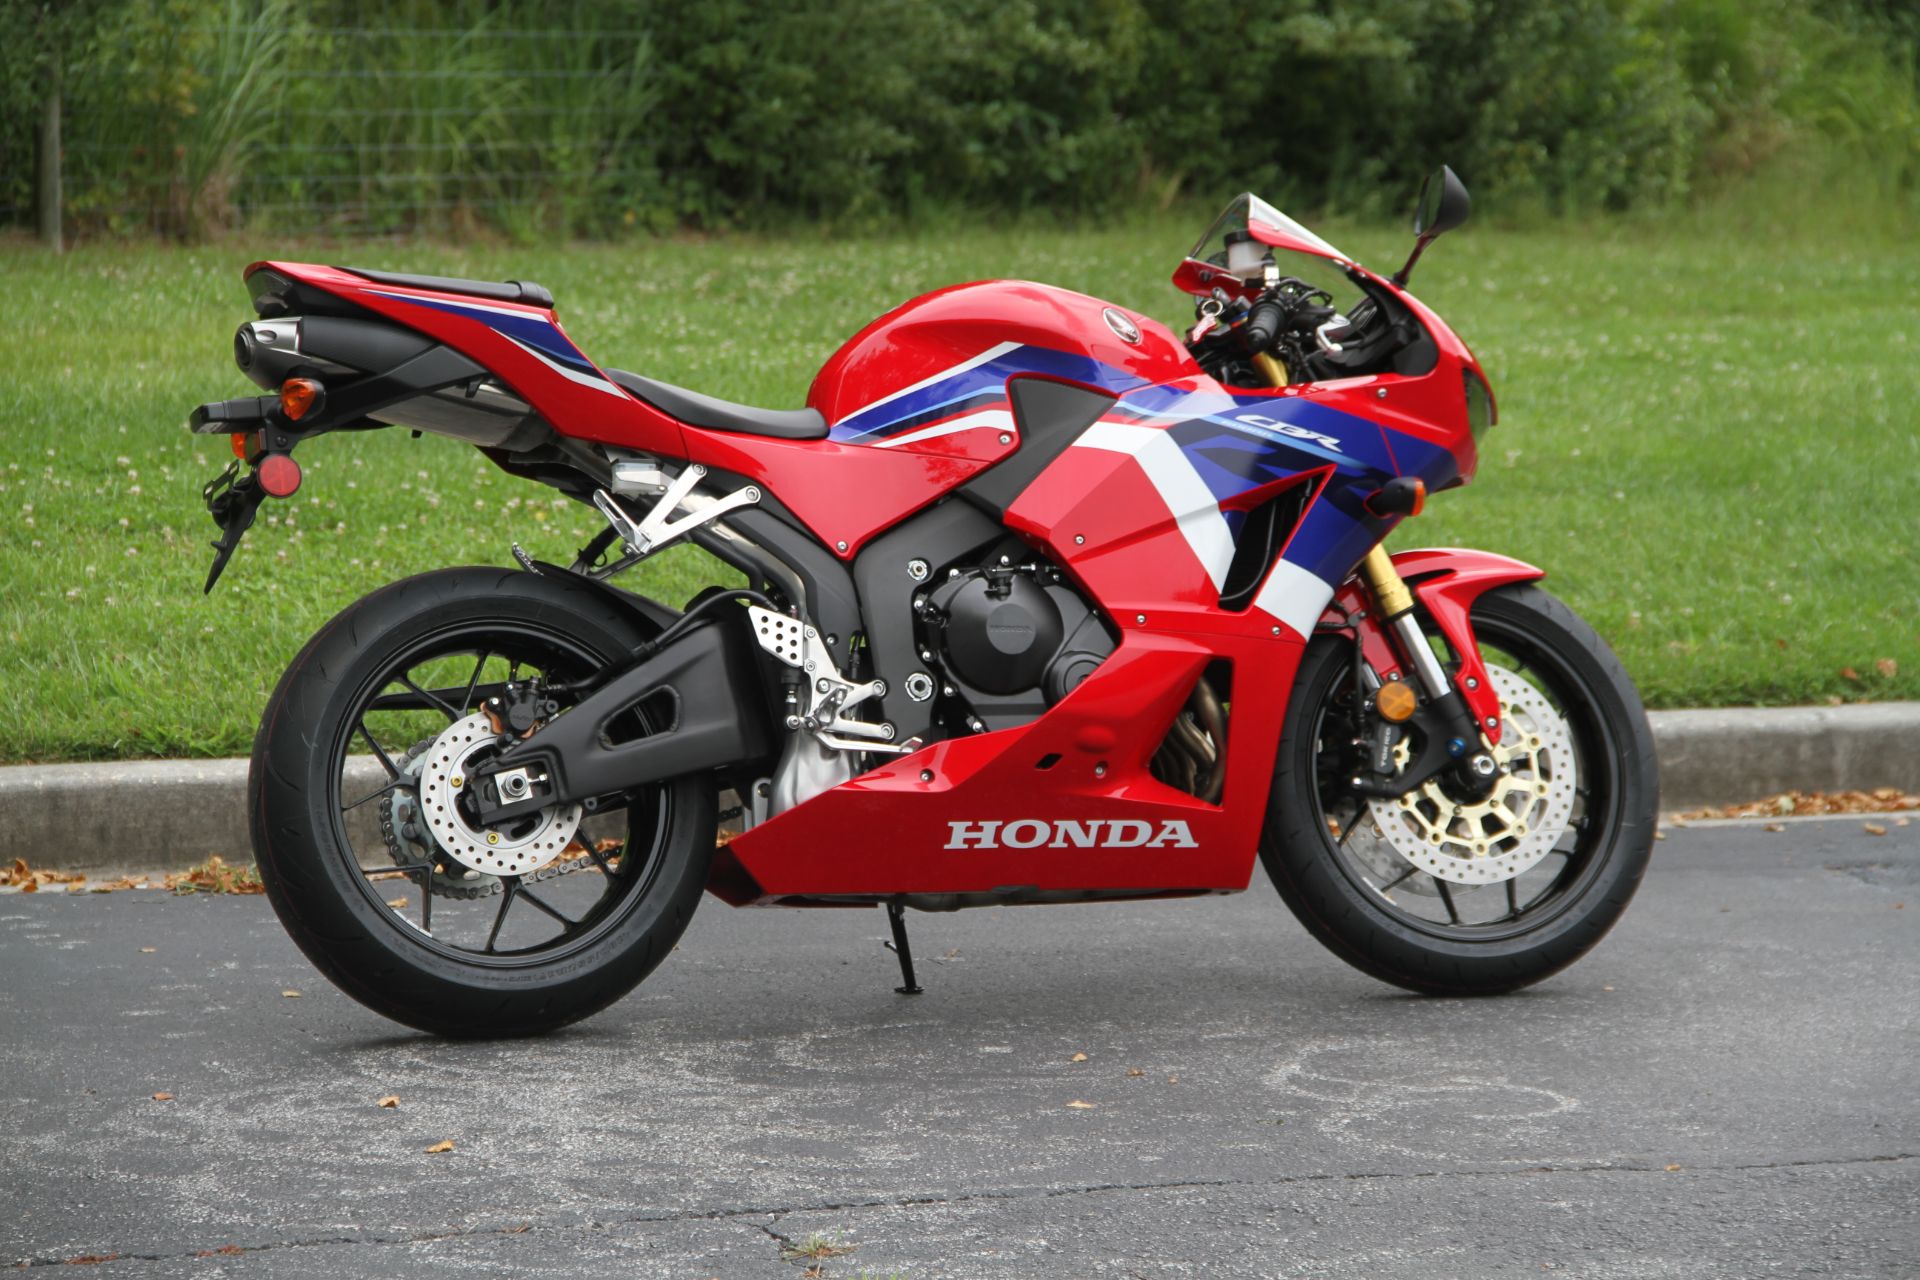 2021 Honda CBR600RR ABS in Hendersonville, North Carolina - Photo 9